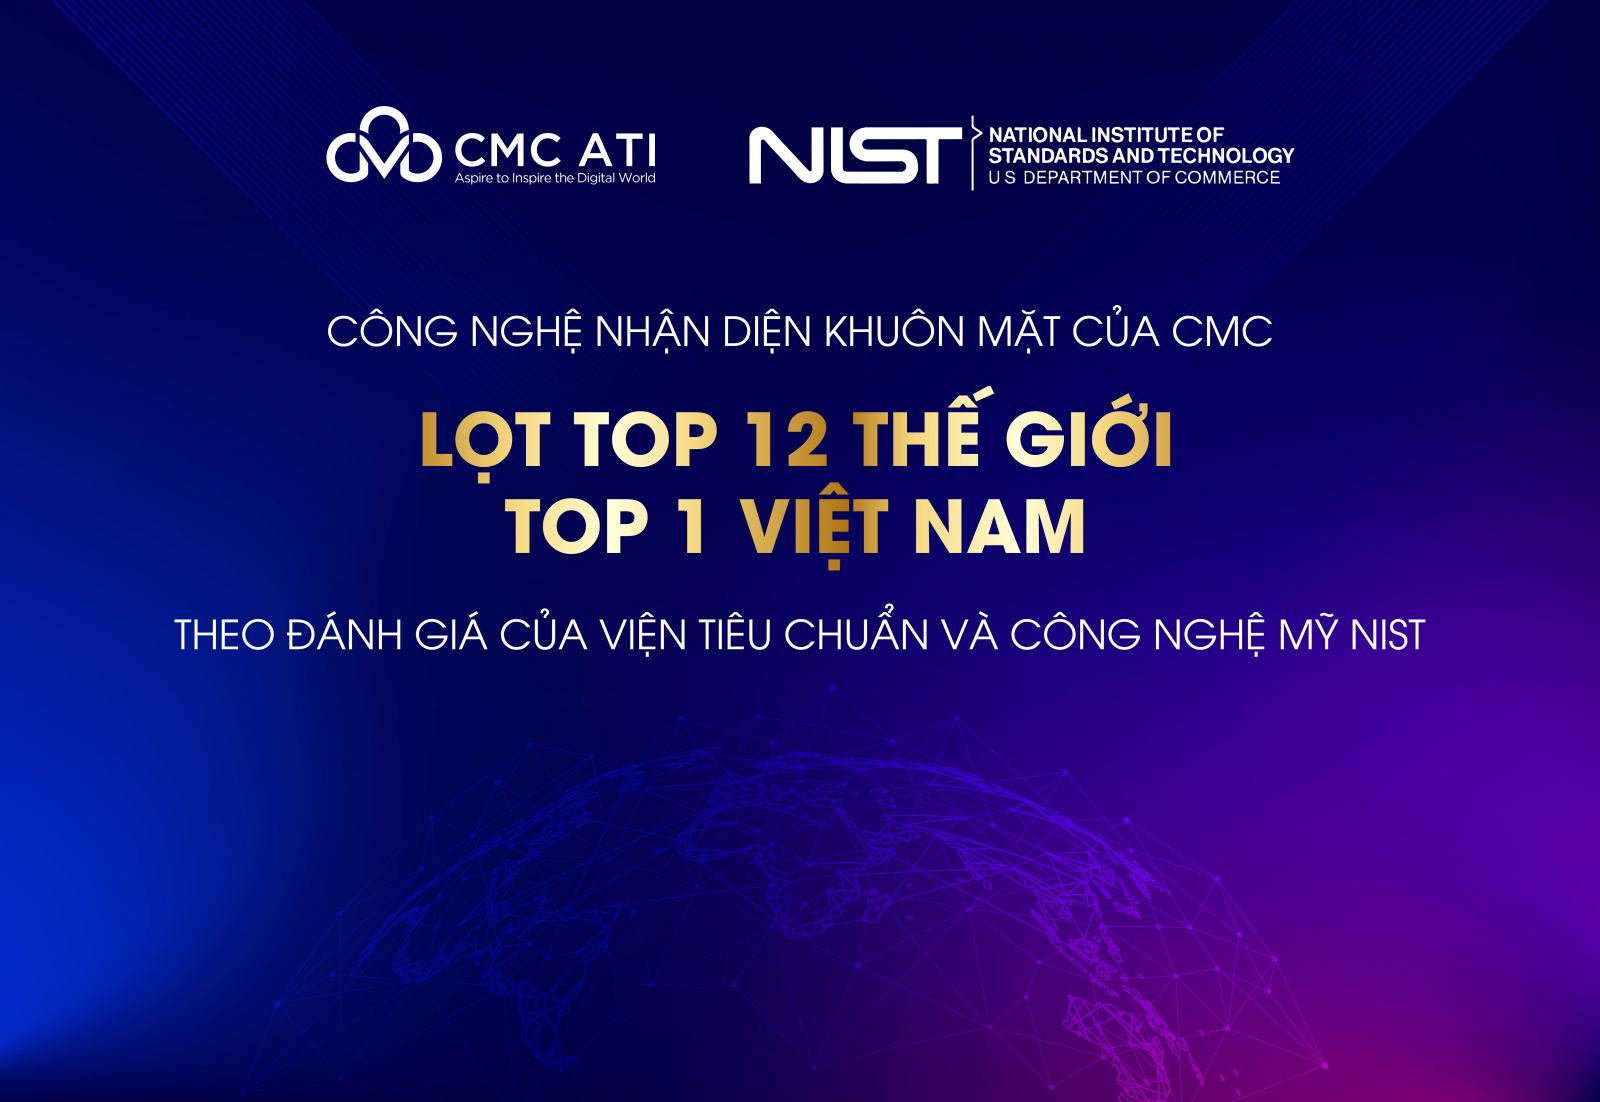 Công nghệ nhận diện khuôn mặt của CMC lọt top 12 thế giới và top 1 Việt Nam theo đánh giá của NIST.